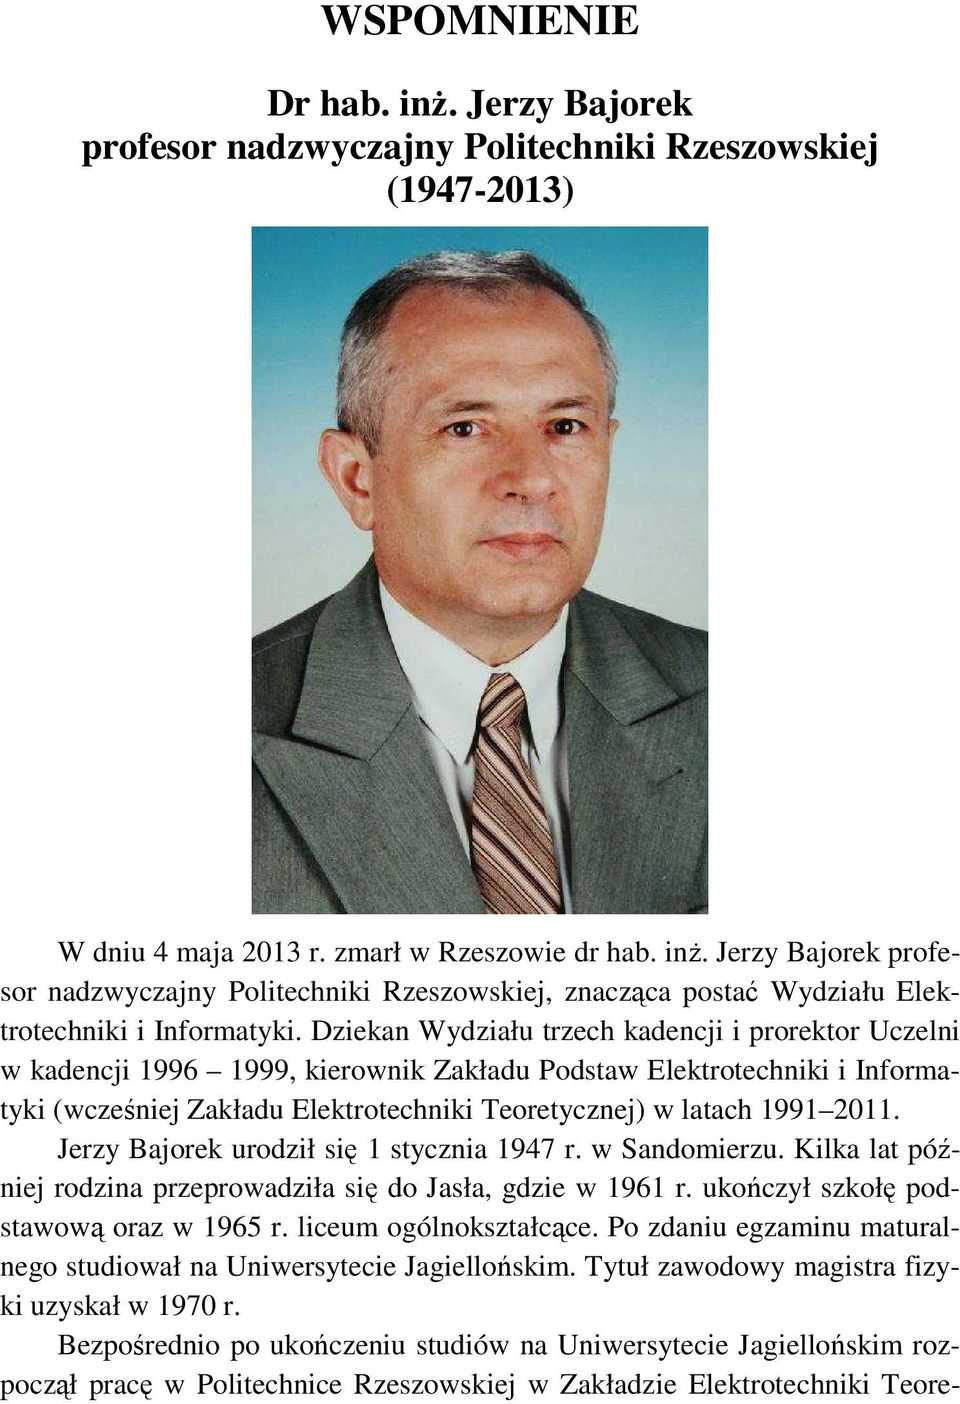 Jerzy Bajorek urodził się 1 stycznia 1947 r. w Sandomierzu. Kilka lat później rodzina przeprowadziła się do Jasła, gdzie w 1961 r. ukończył szkołę podstawową oraz w 1965 r. liceum ogólnokształcące.